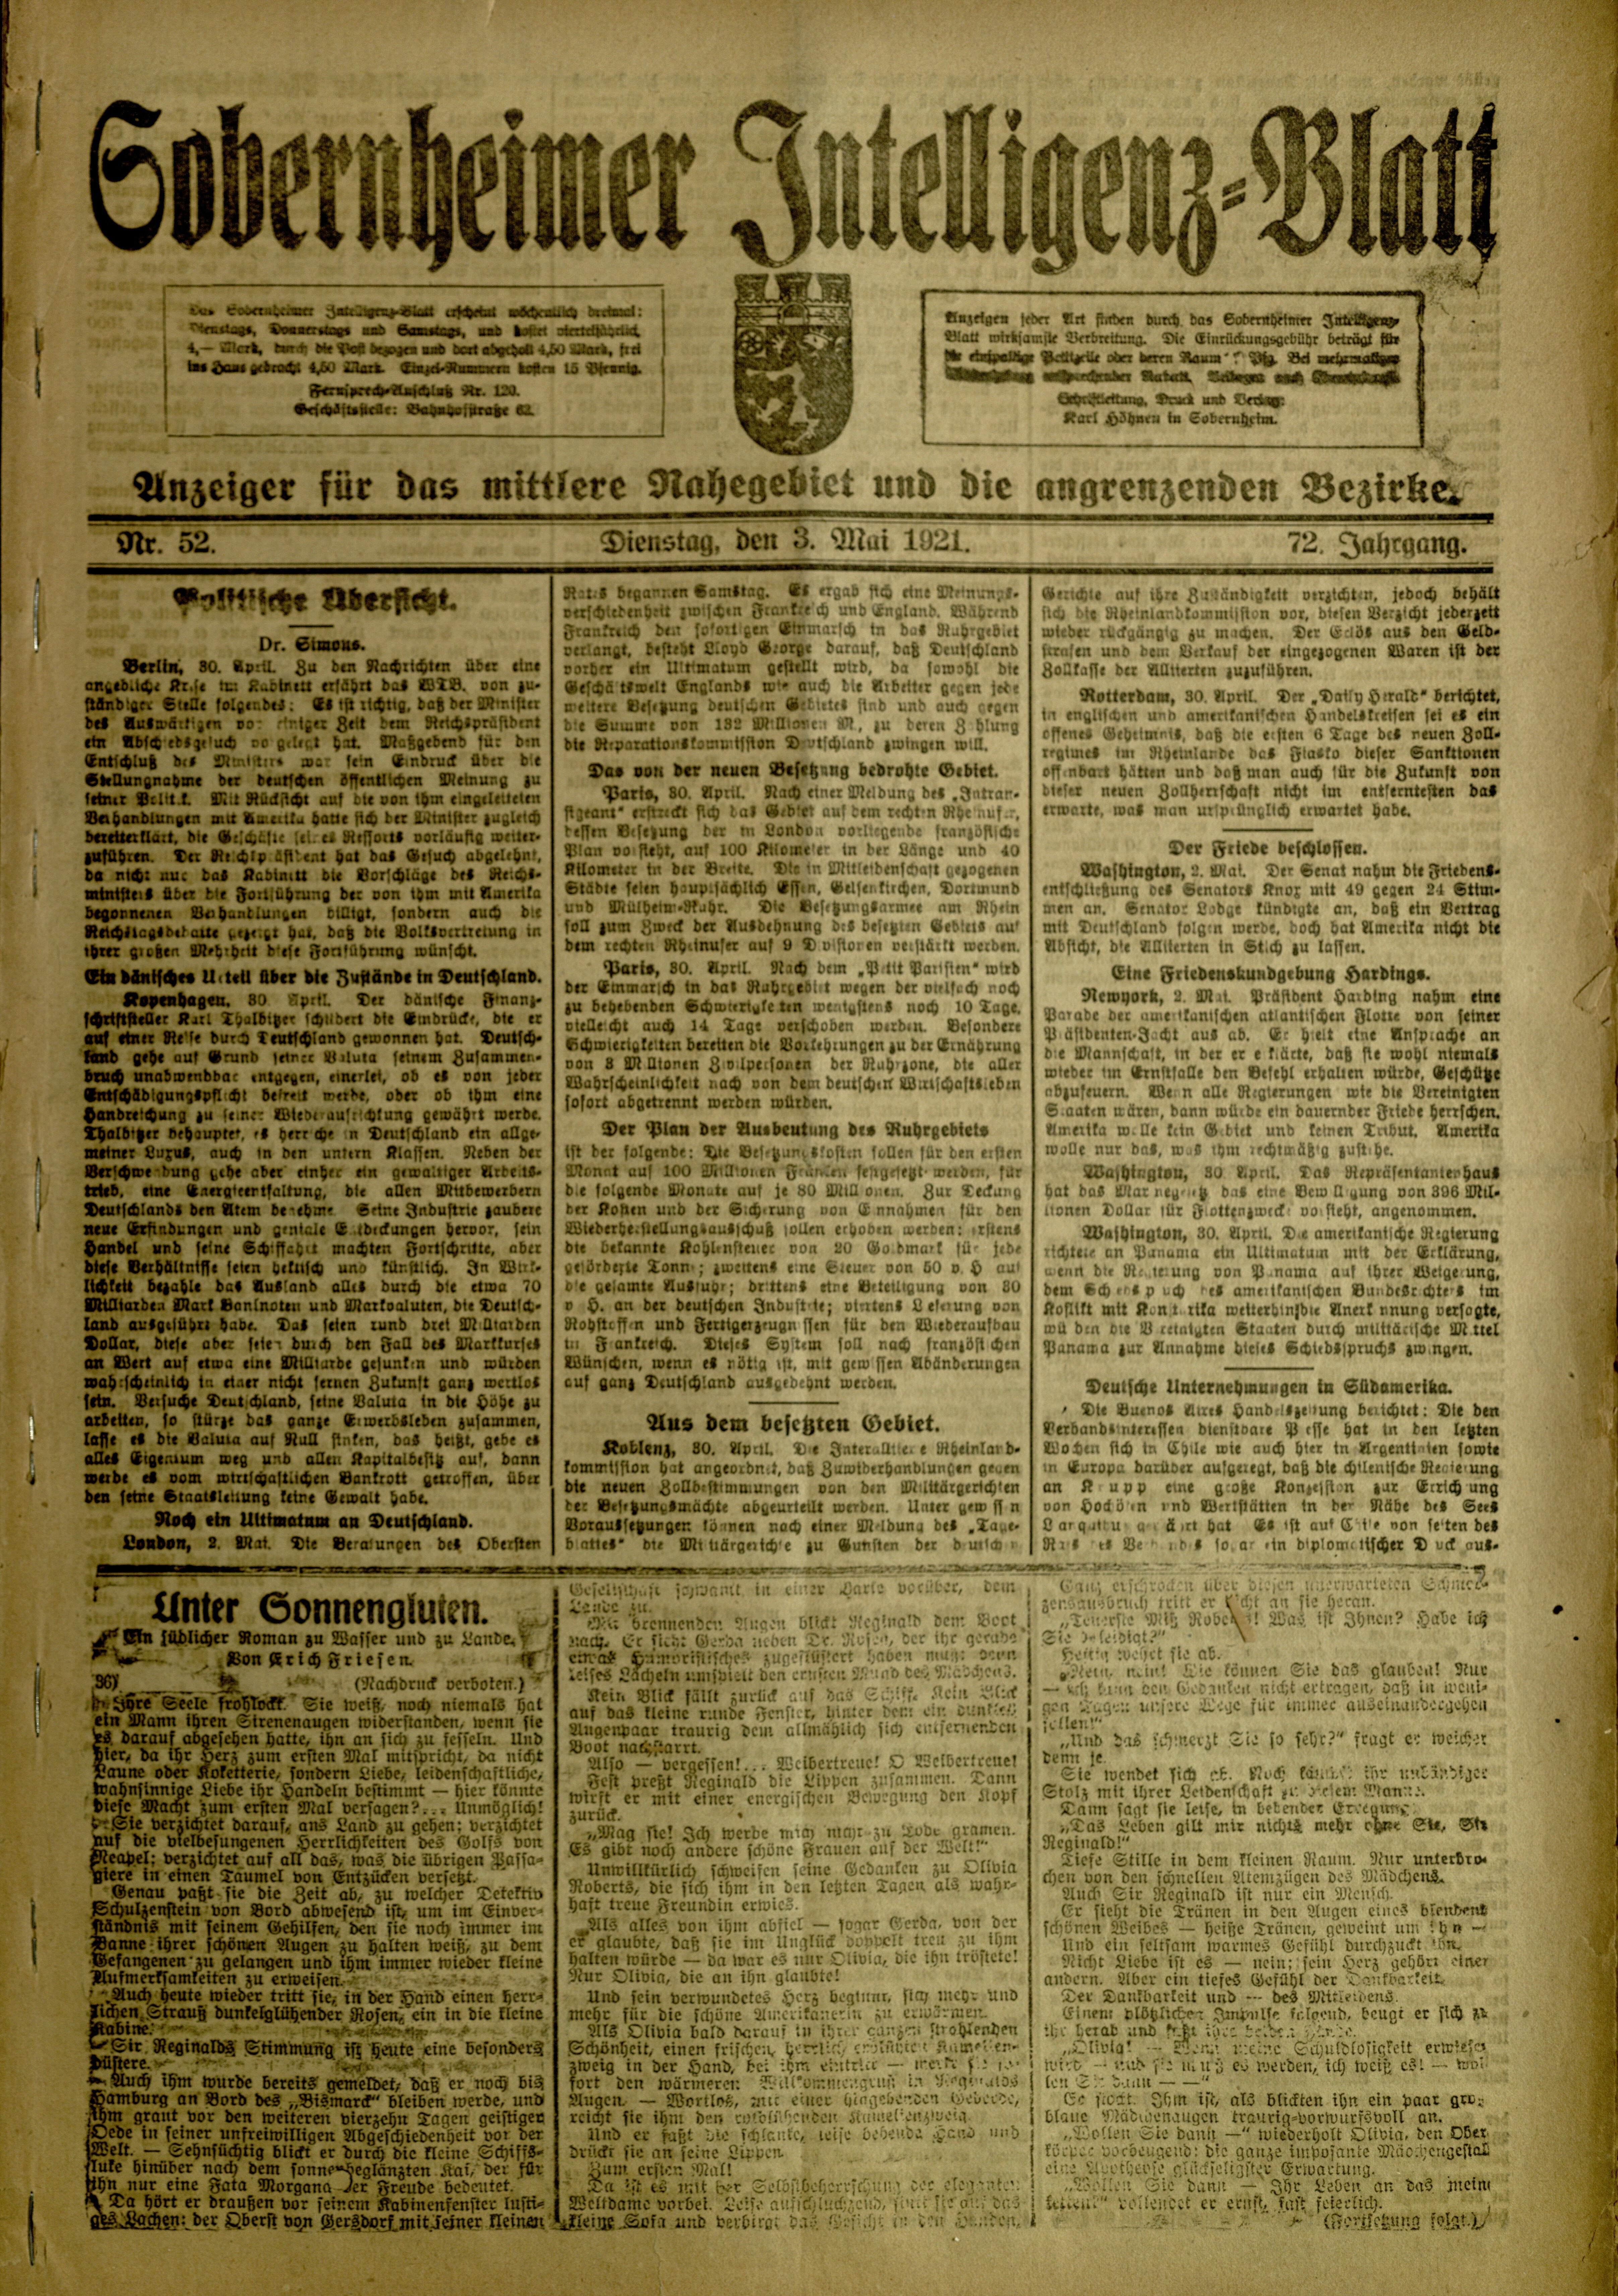 Zeitung: Sobernheimer Intelligenzblatt; Mai 1921, Jg. 72 Nr. 52 (Heimatmuseum Bad Sobernheim CC BY-NC-SA)